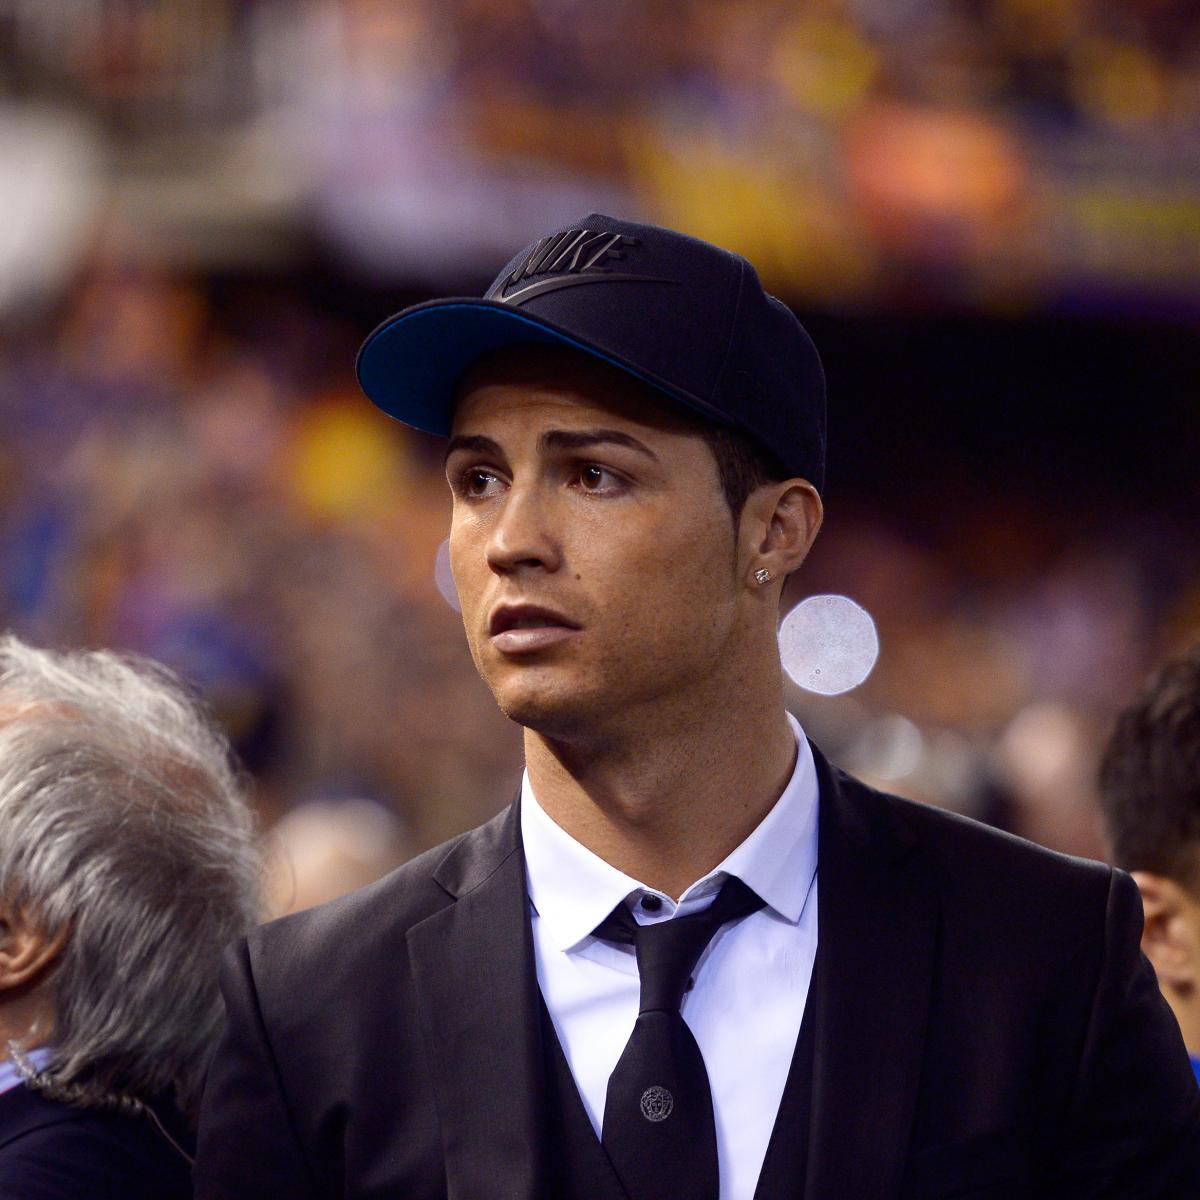 Cristiano Ronaldo Rocks a Baseball Cap at the Copa Del Rey | Bleacher Report | Latest ...